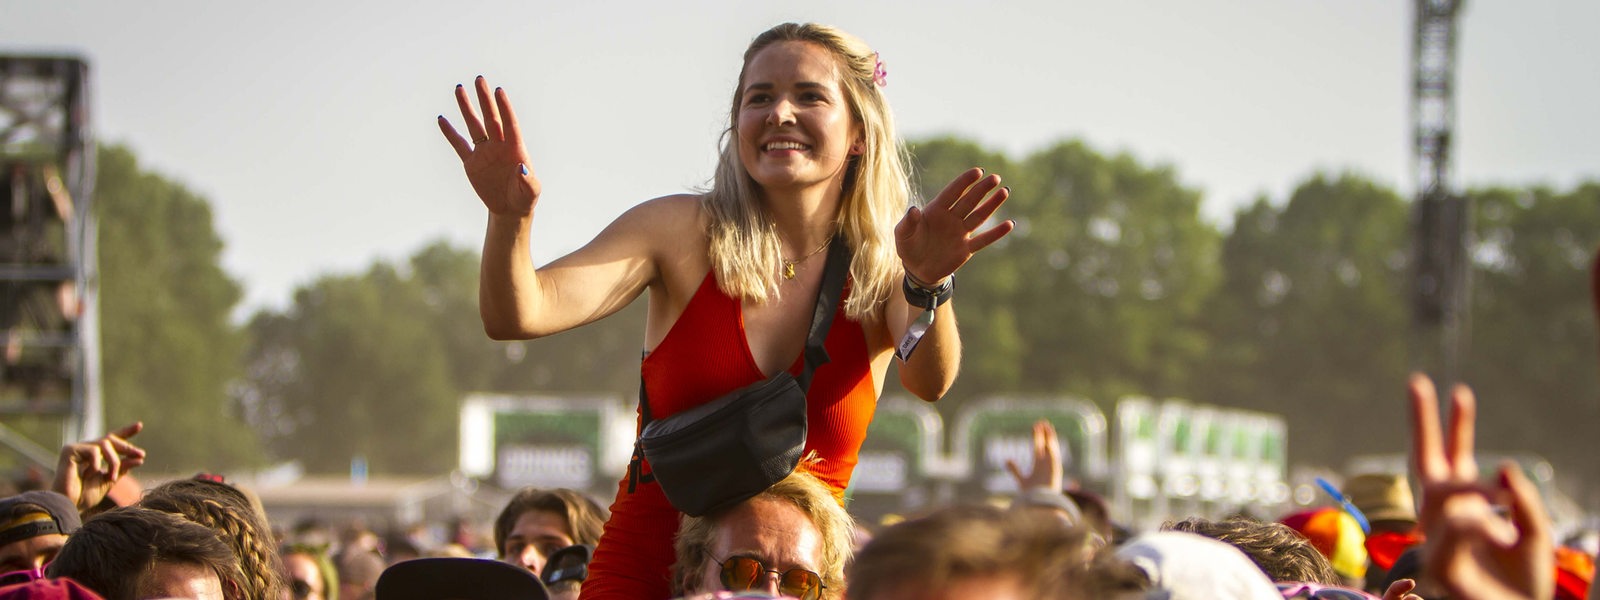 Eine Frau tanzt auf den Schultern einer anderen Person beim Hurricane-Festival